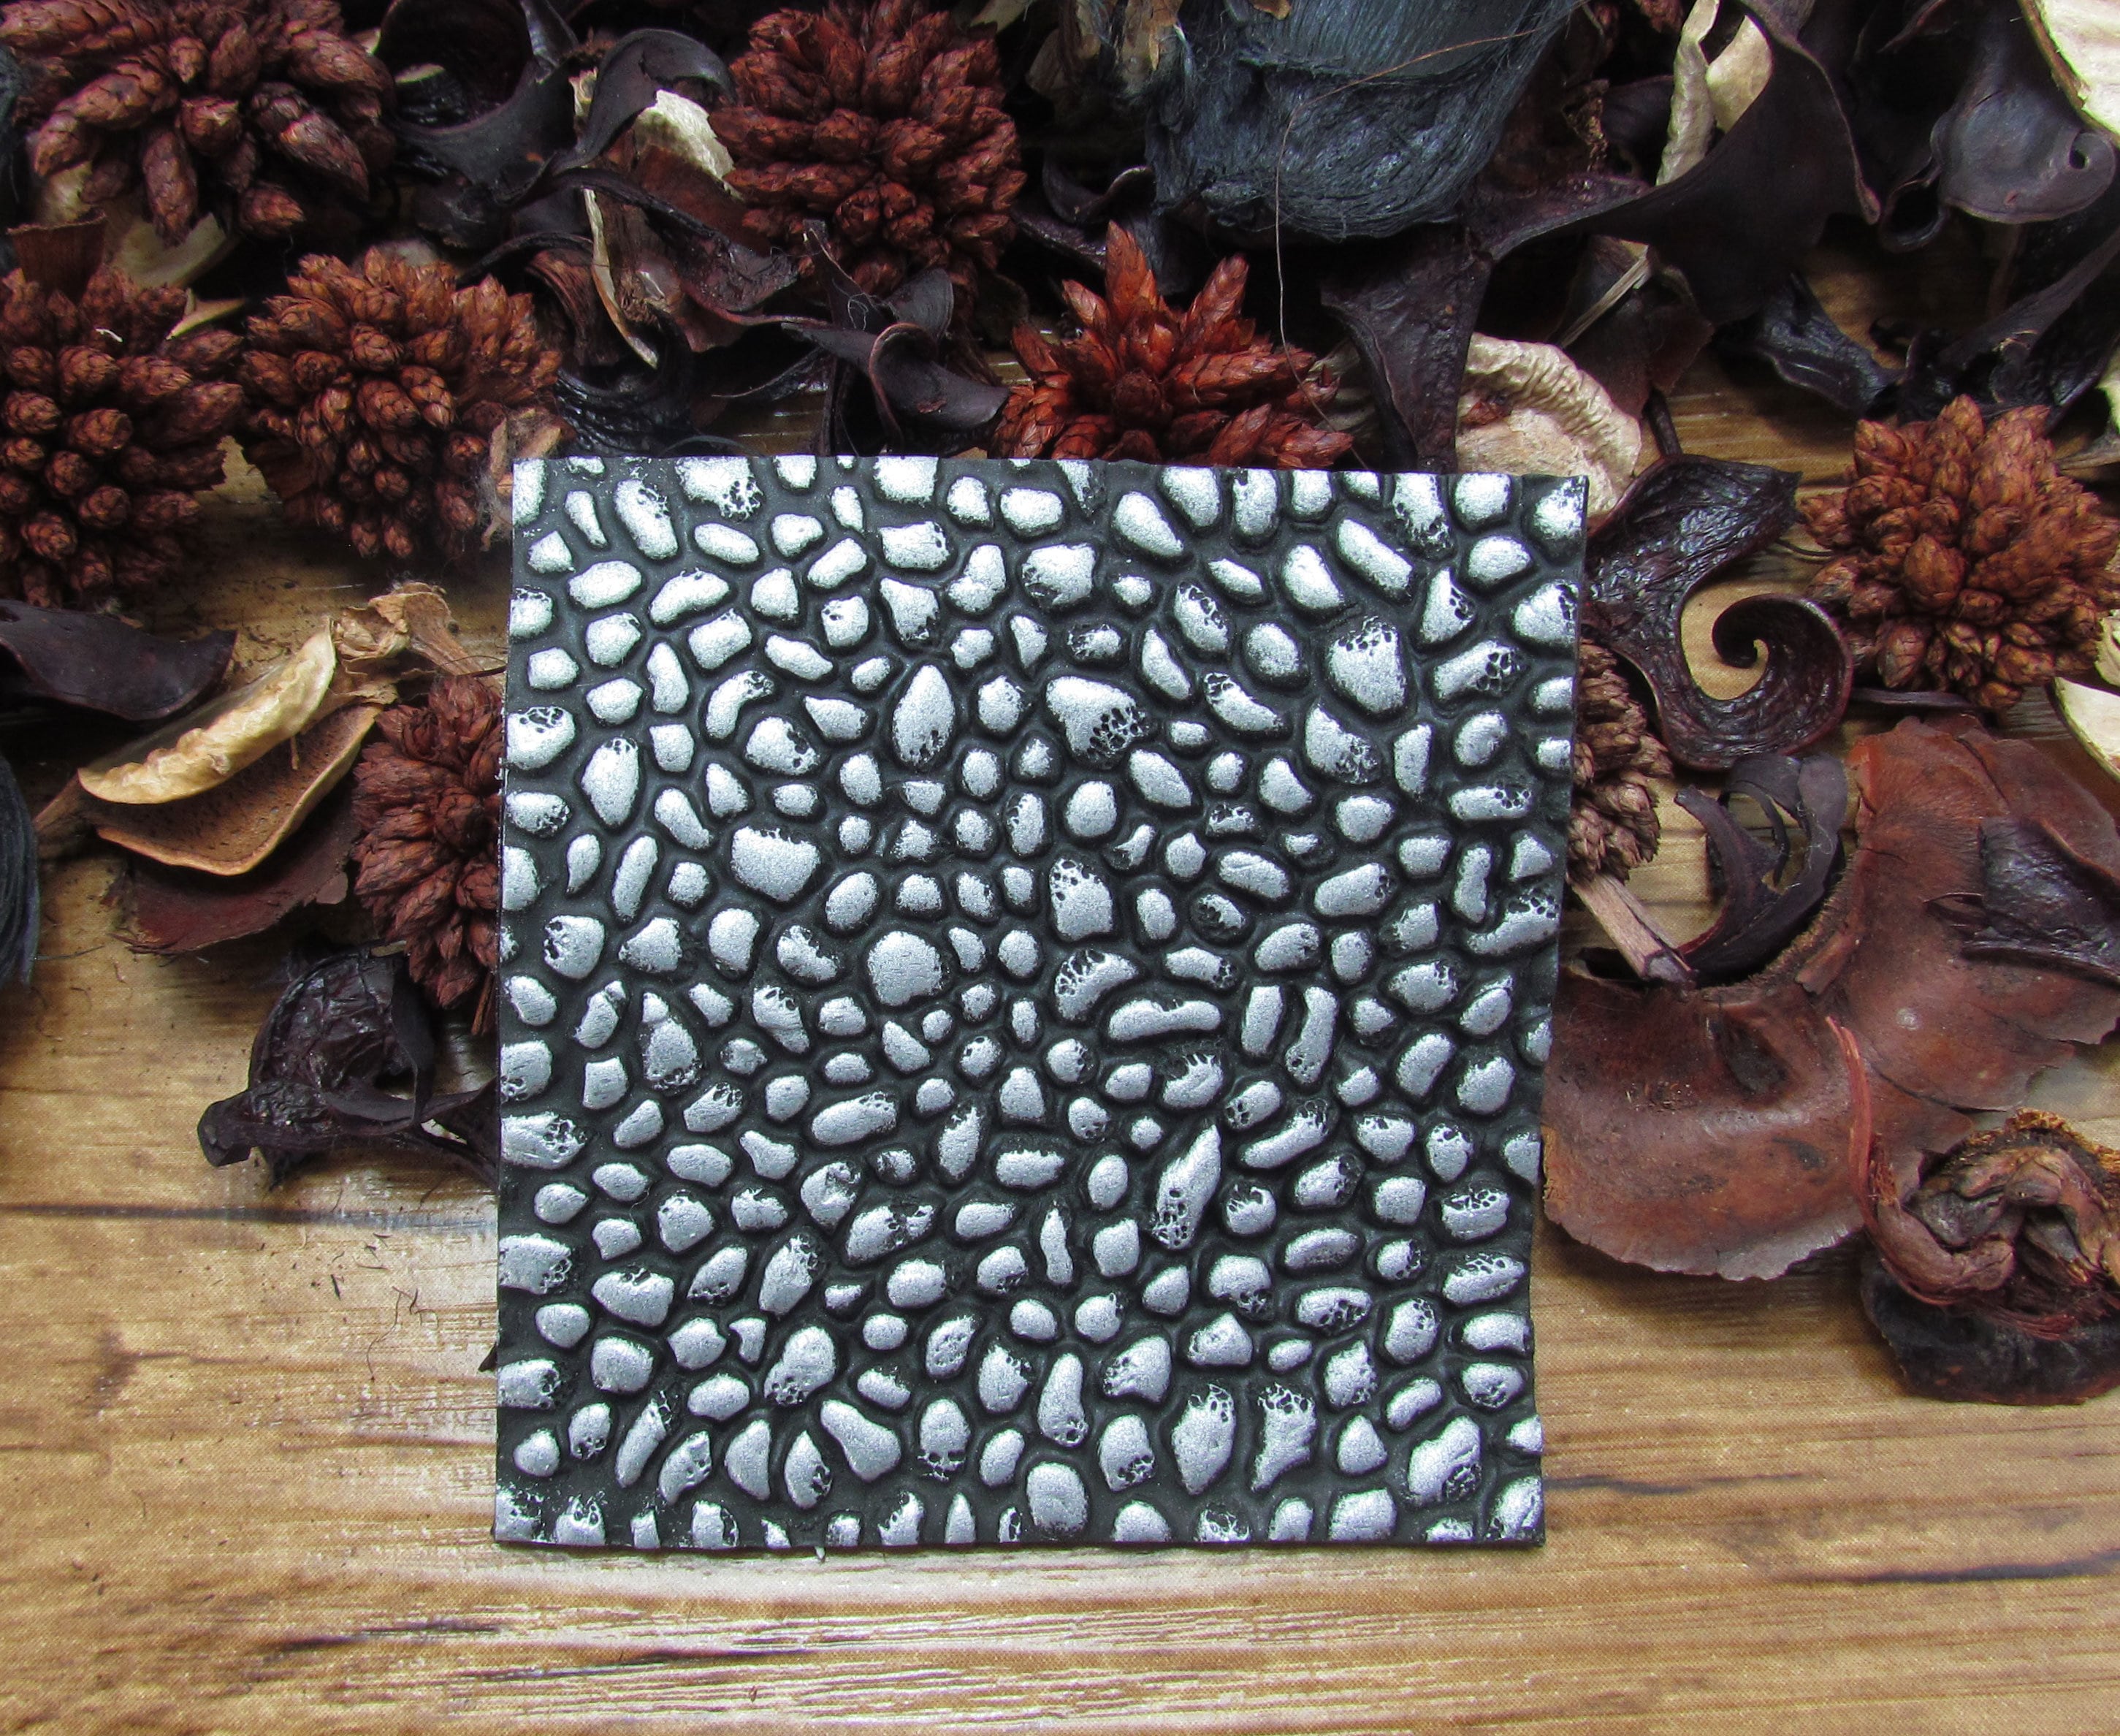 Polymer Clay Texture Mat Clay Texture Polymer Clay Mat Clay Mat Polymer  Clay Stamp 11. Silicone Texture sari Ribbon 